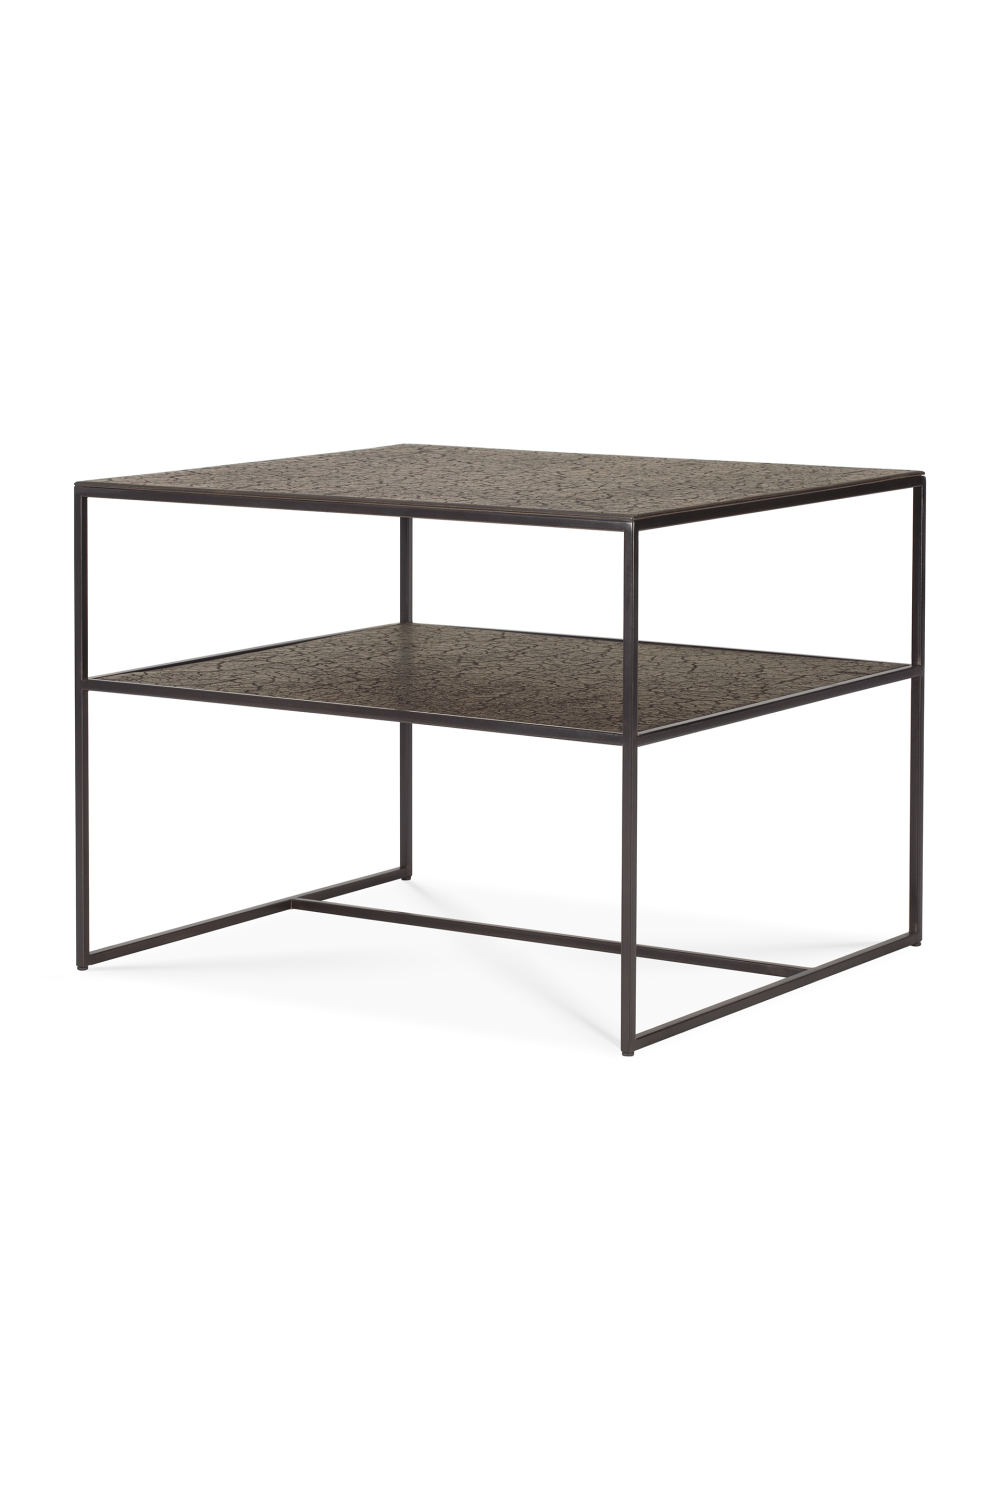 Metallic Side Table With Undershelf | Ethnicraft Pentagon │ Oroa.com